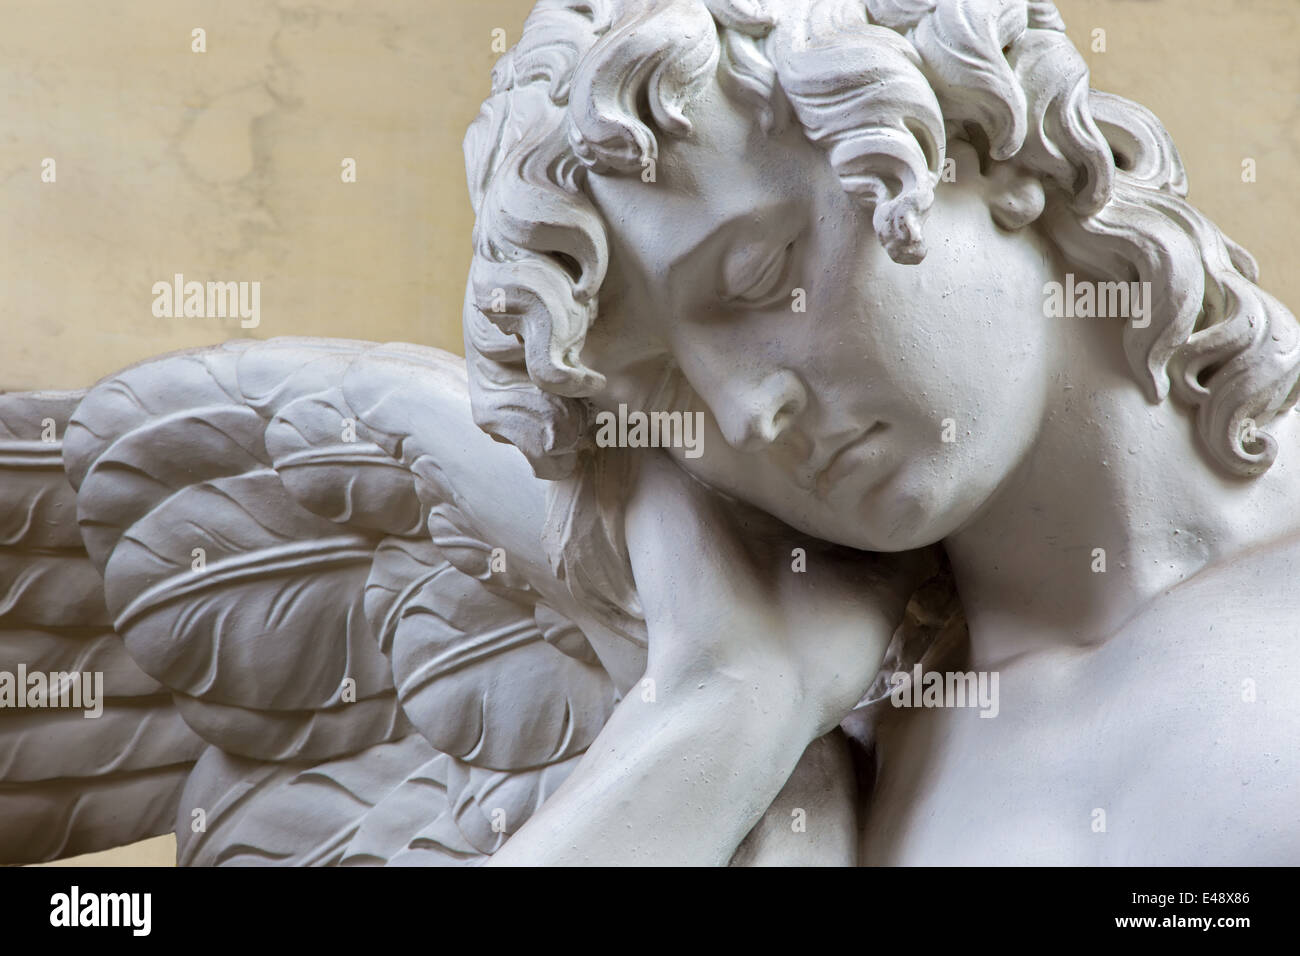 MECHELEN, Belgien - 14. Juni 2014: Die Trauer der Engel. Detail der Statue aus Stein in der Kirche unserer lieben Frau in de Dyle. Stockfoto